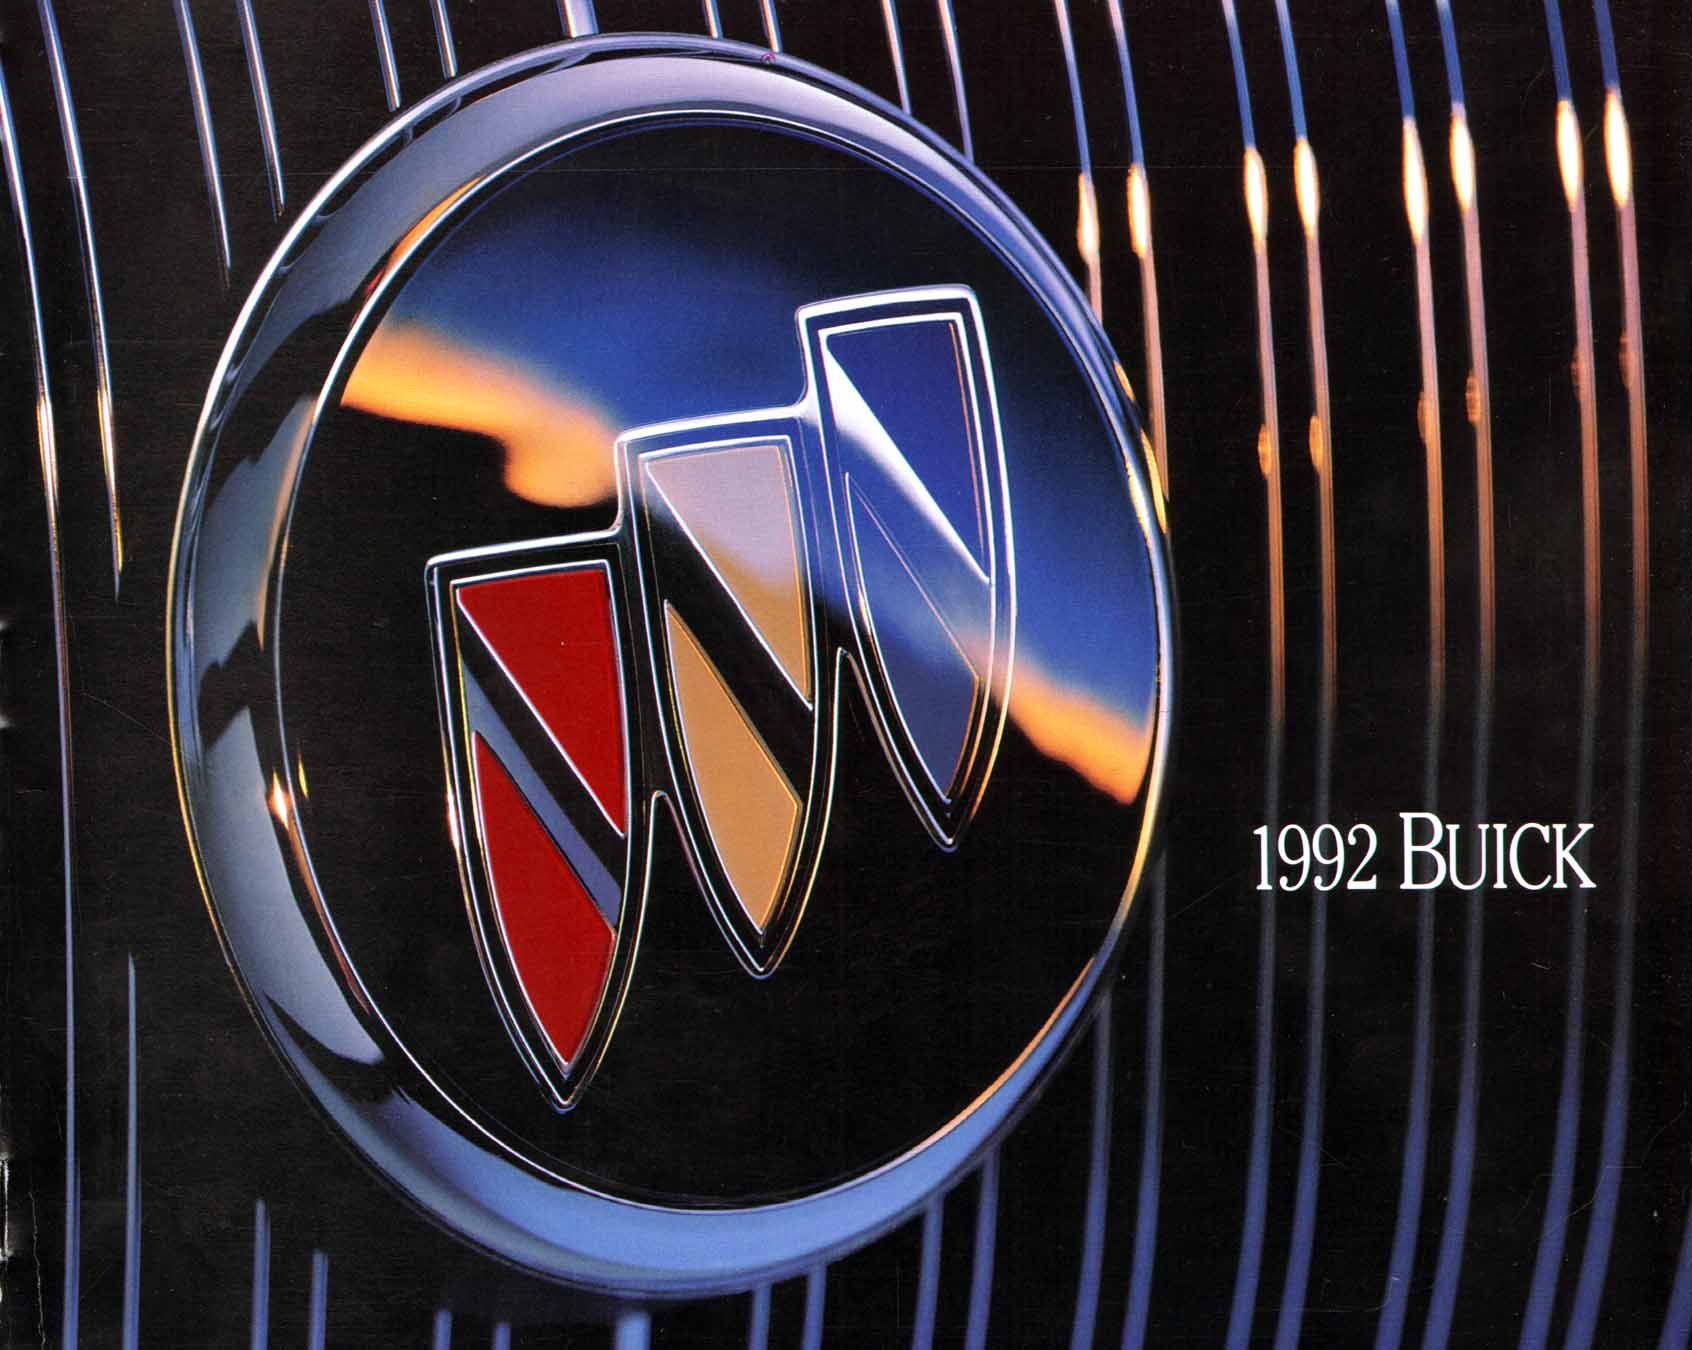 1992 Buick Full Line Prestige-00